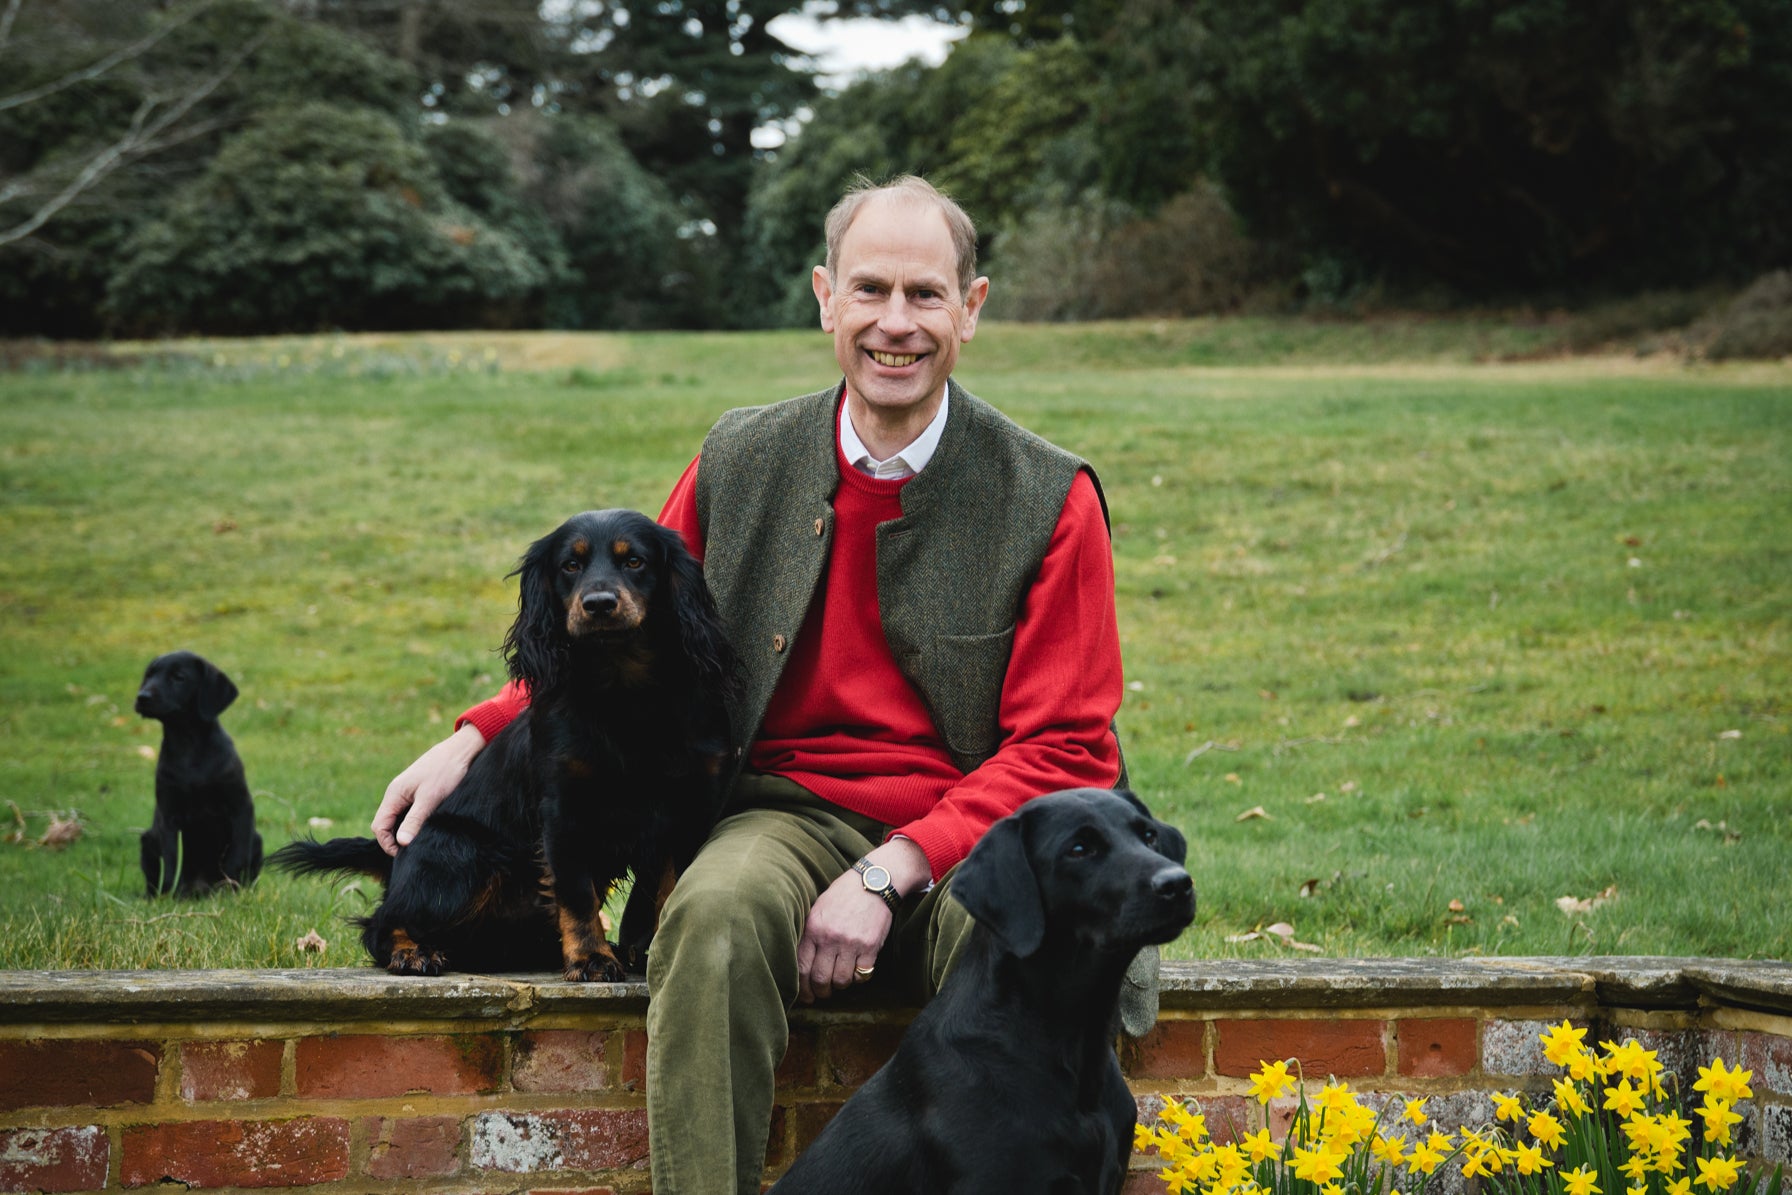 Duke of Edinburgh with his dogs Teal (labrador), Mole (cocker spaniel), and Teasel (labrador puppy)